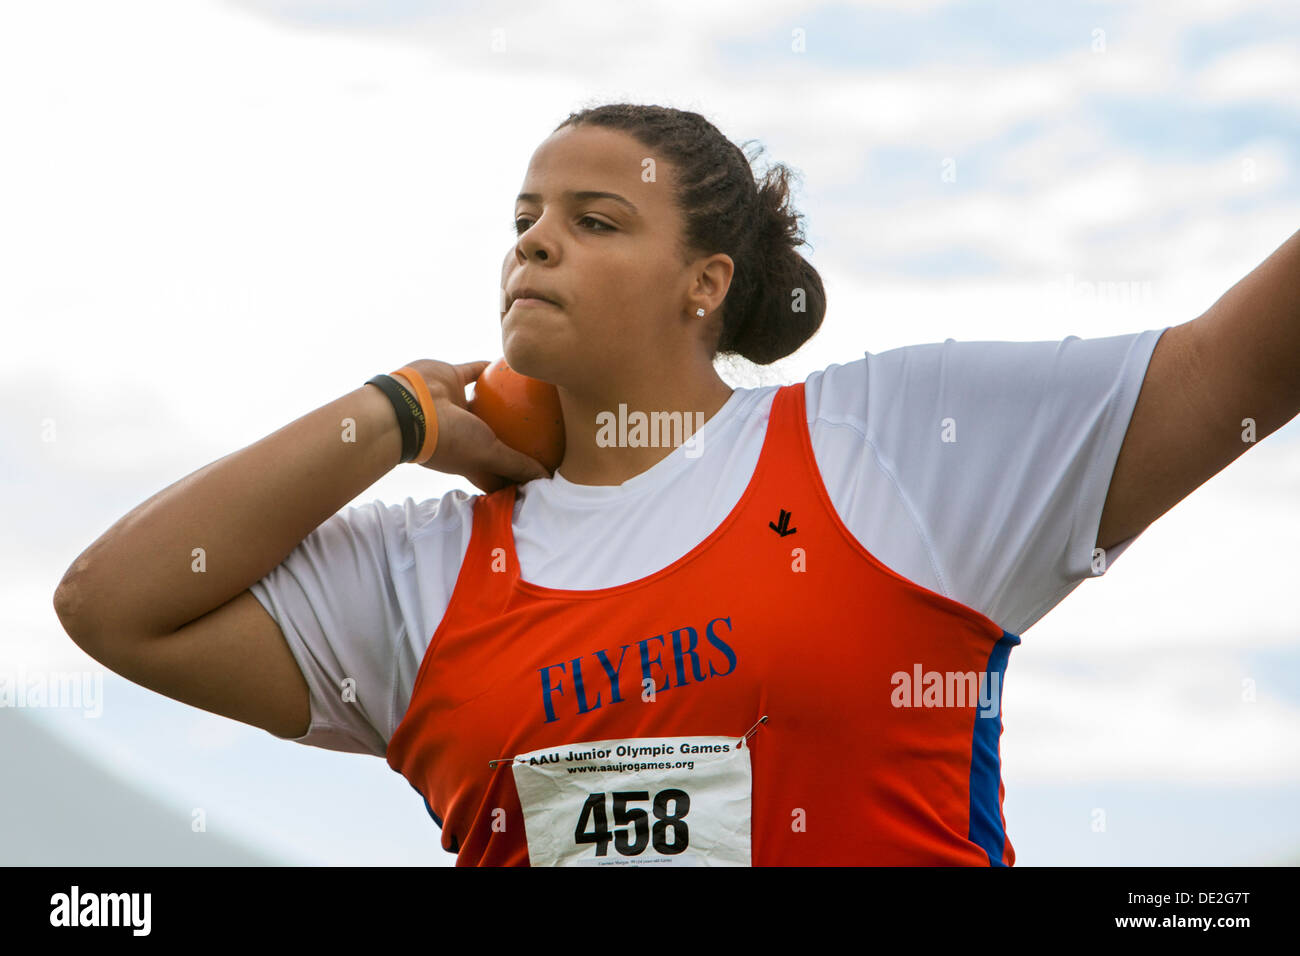 Ypsilanti, Michigan - Lancer la concurrence pendant l'athlétisme à l'AAU Jeux Olympiques Junior. Banque D'Images